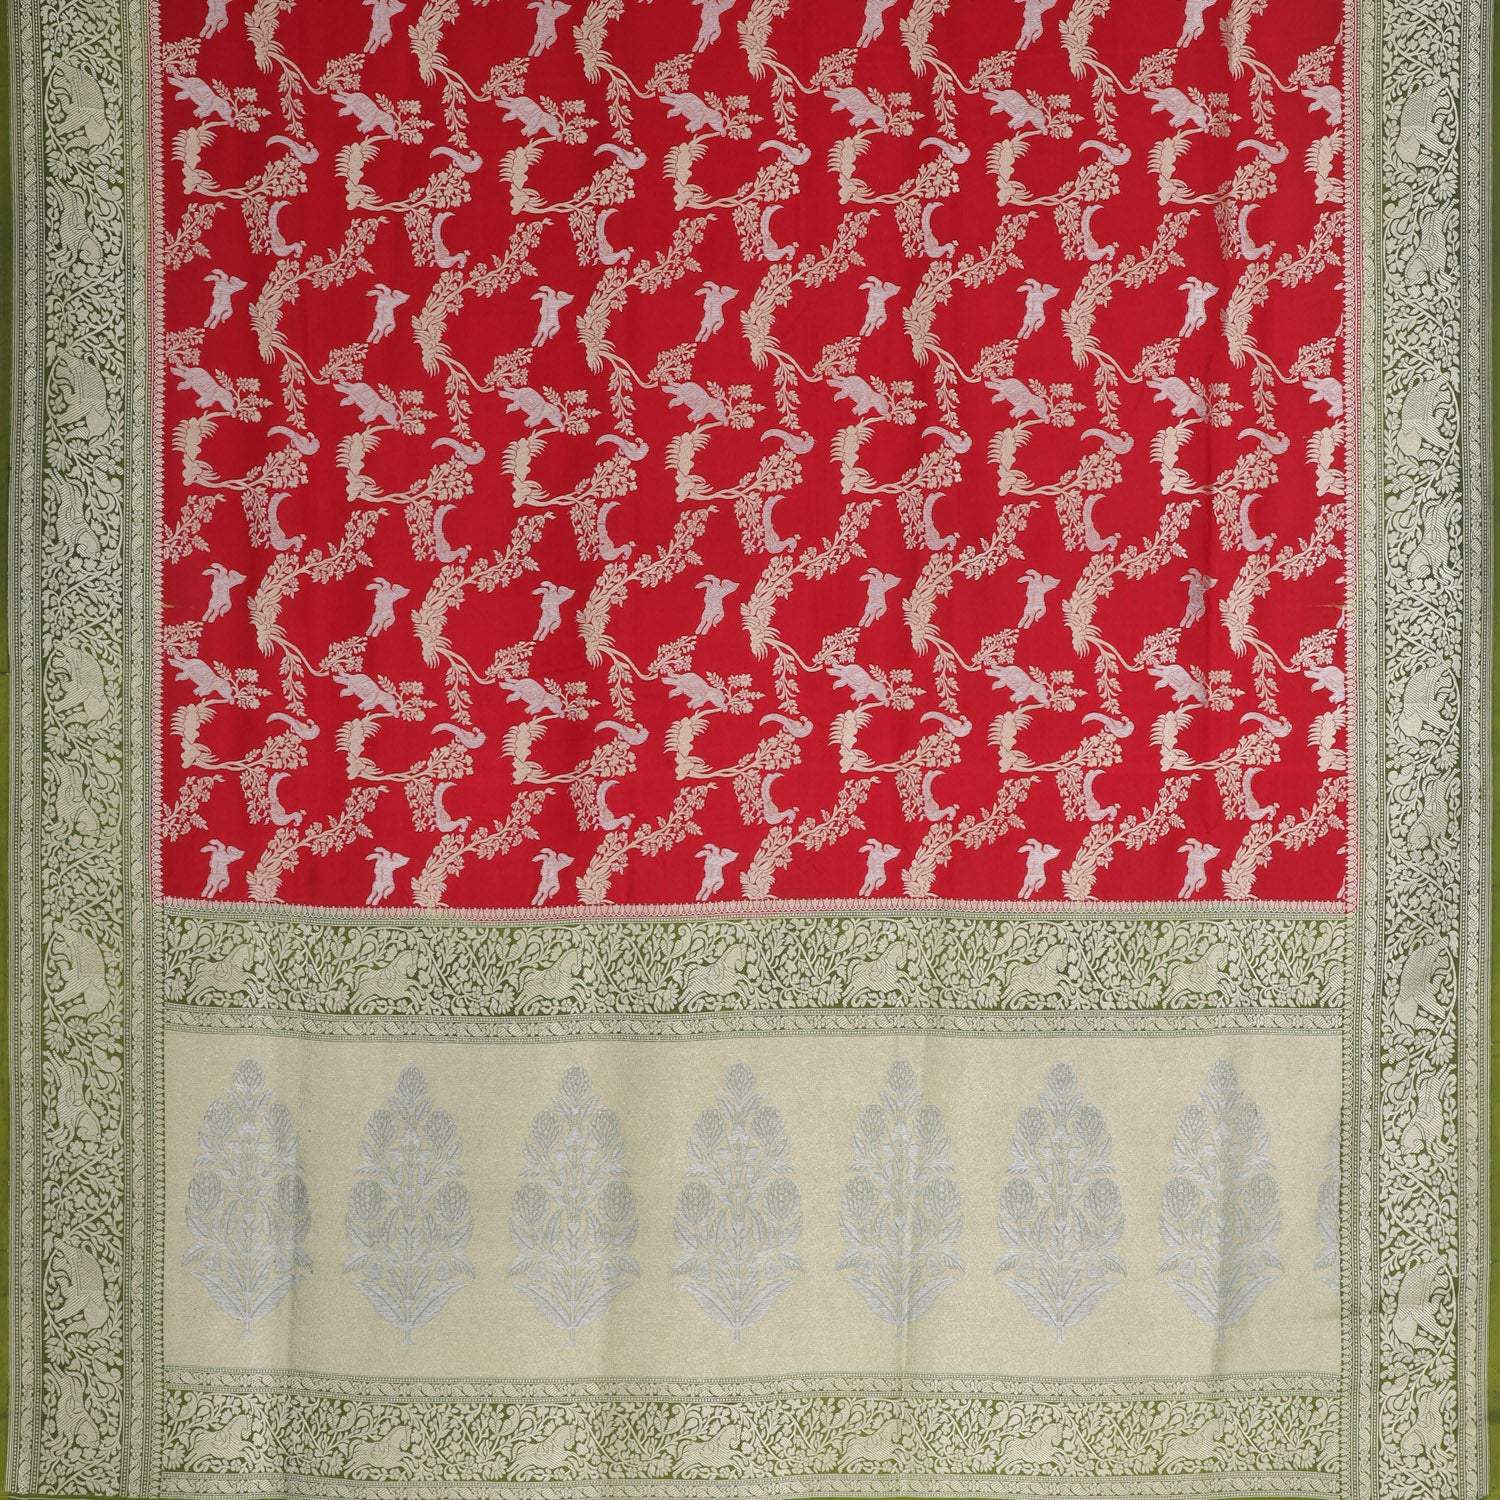 Deep Red Banarasi Silk Saree With Floral Pattern - Singhania's